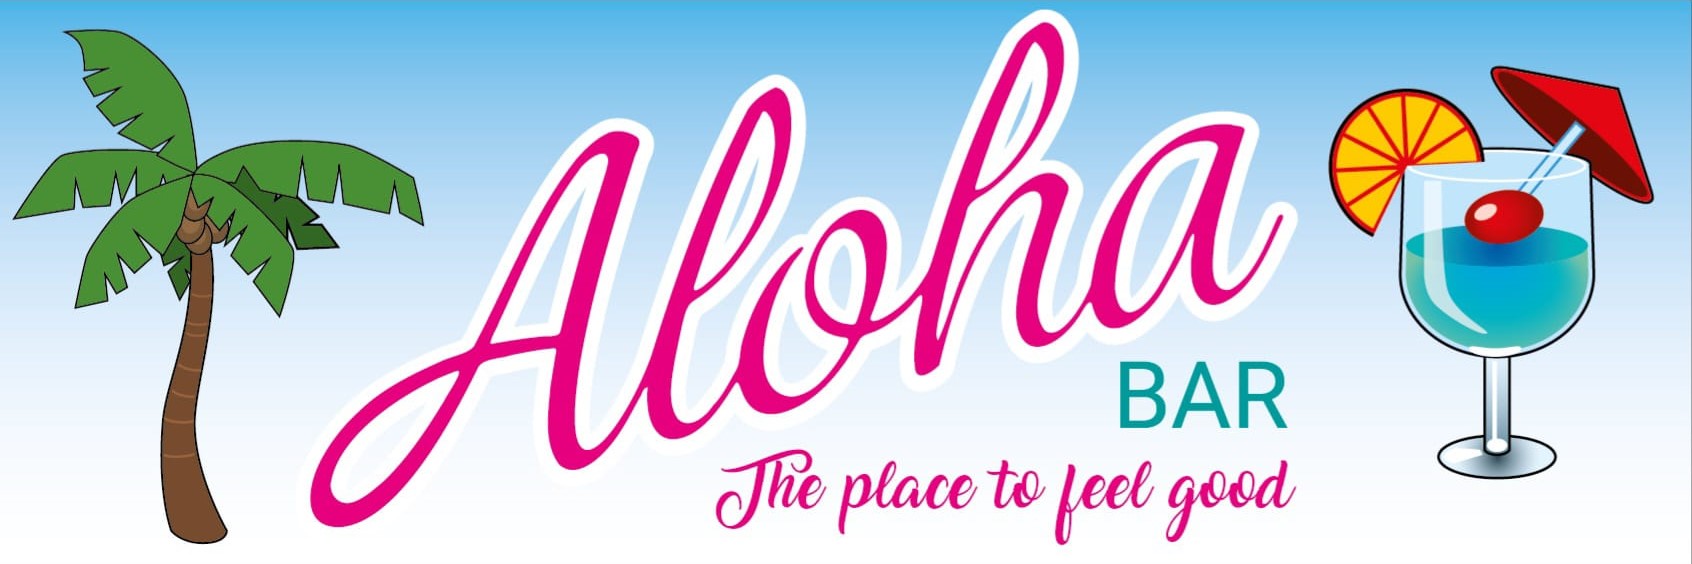 logo aloha